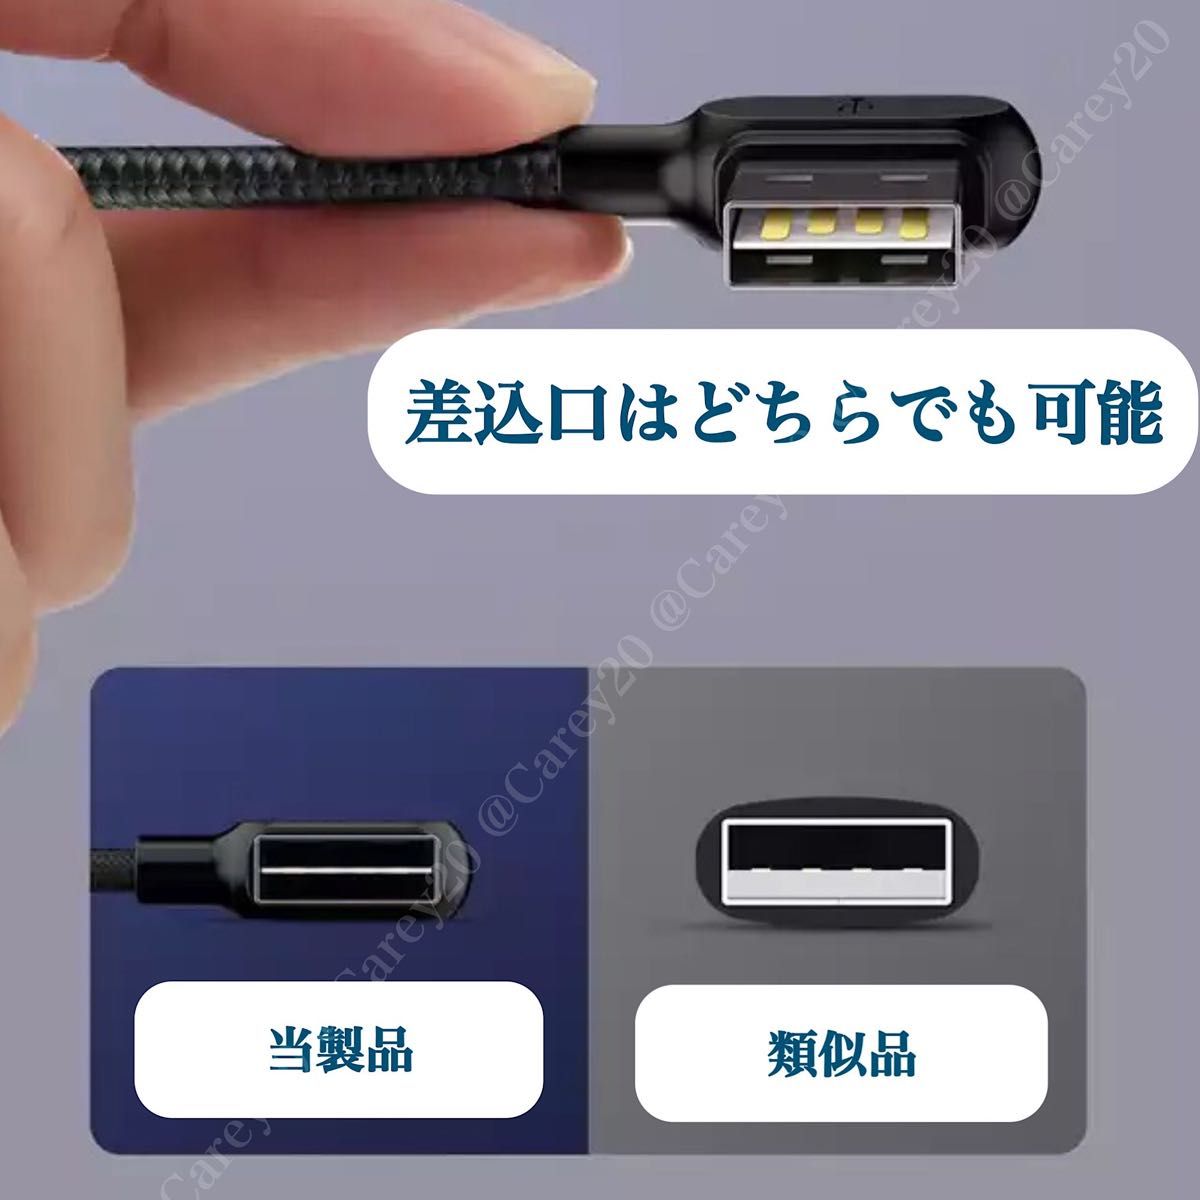 2本 iPhone 充電器 ケーブル 3m L字型 光る LED Lightning ライトニング mcdodo データ転送USB